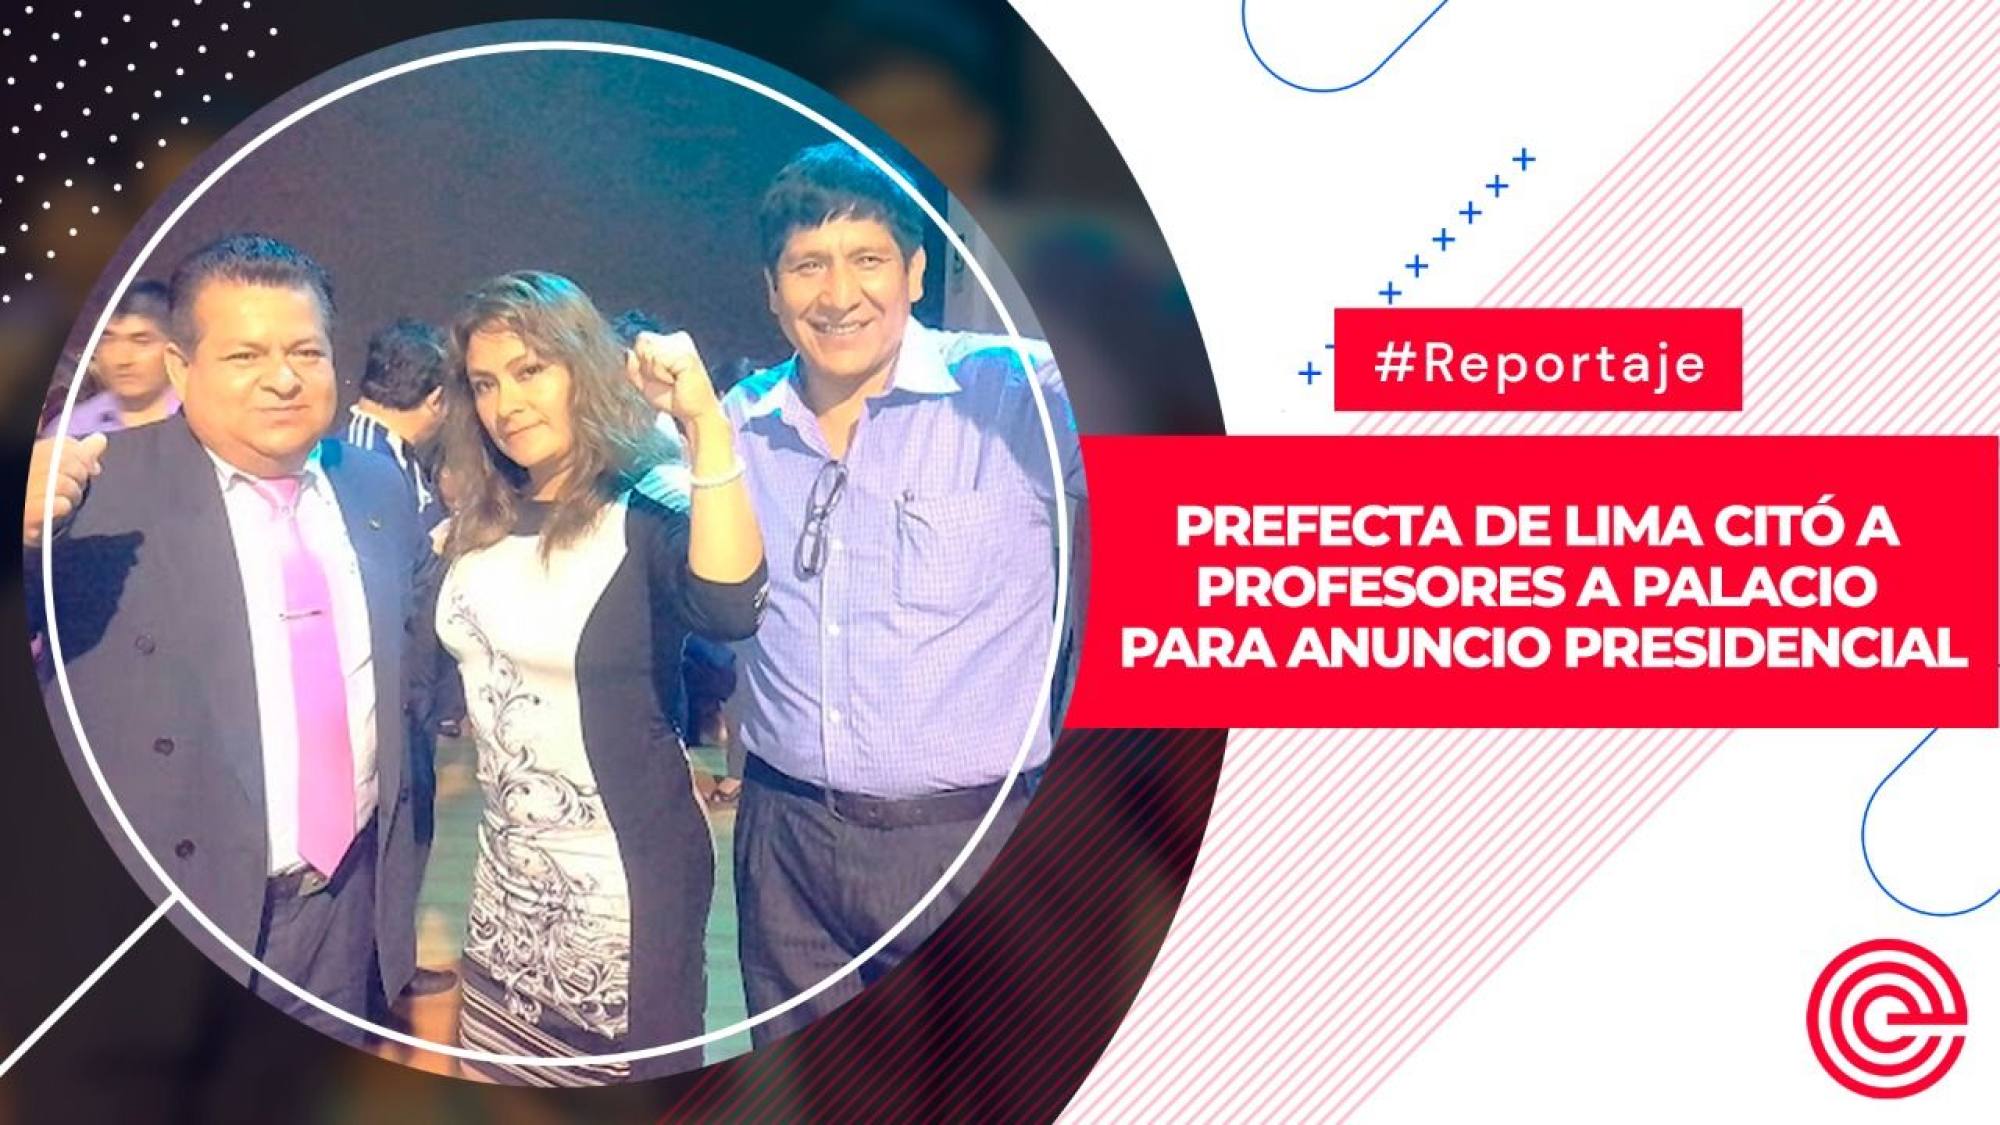 Prefecta de Lima citó a profesores a Palacio para anuncio presidencial, Epicentro TV